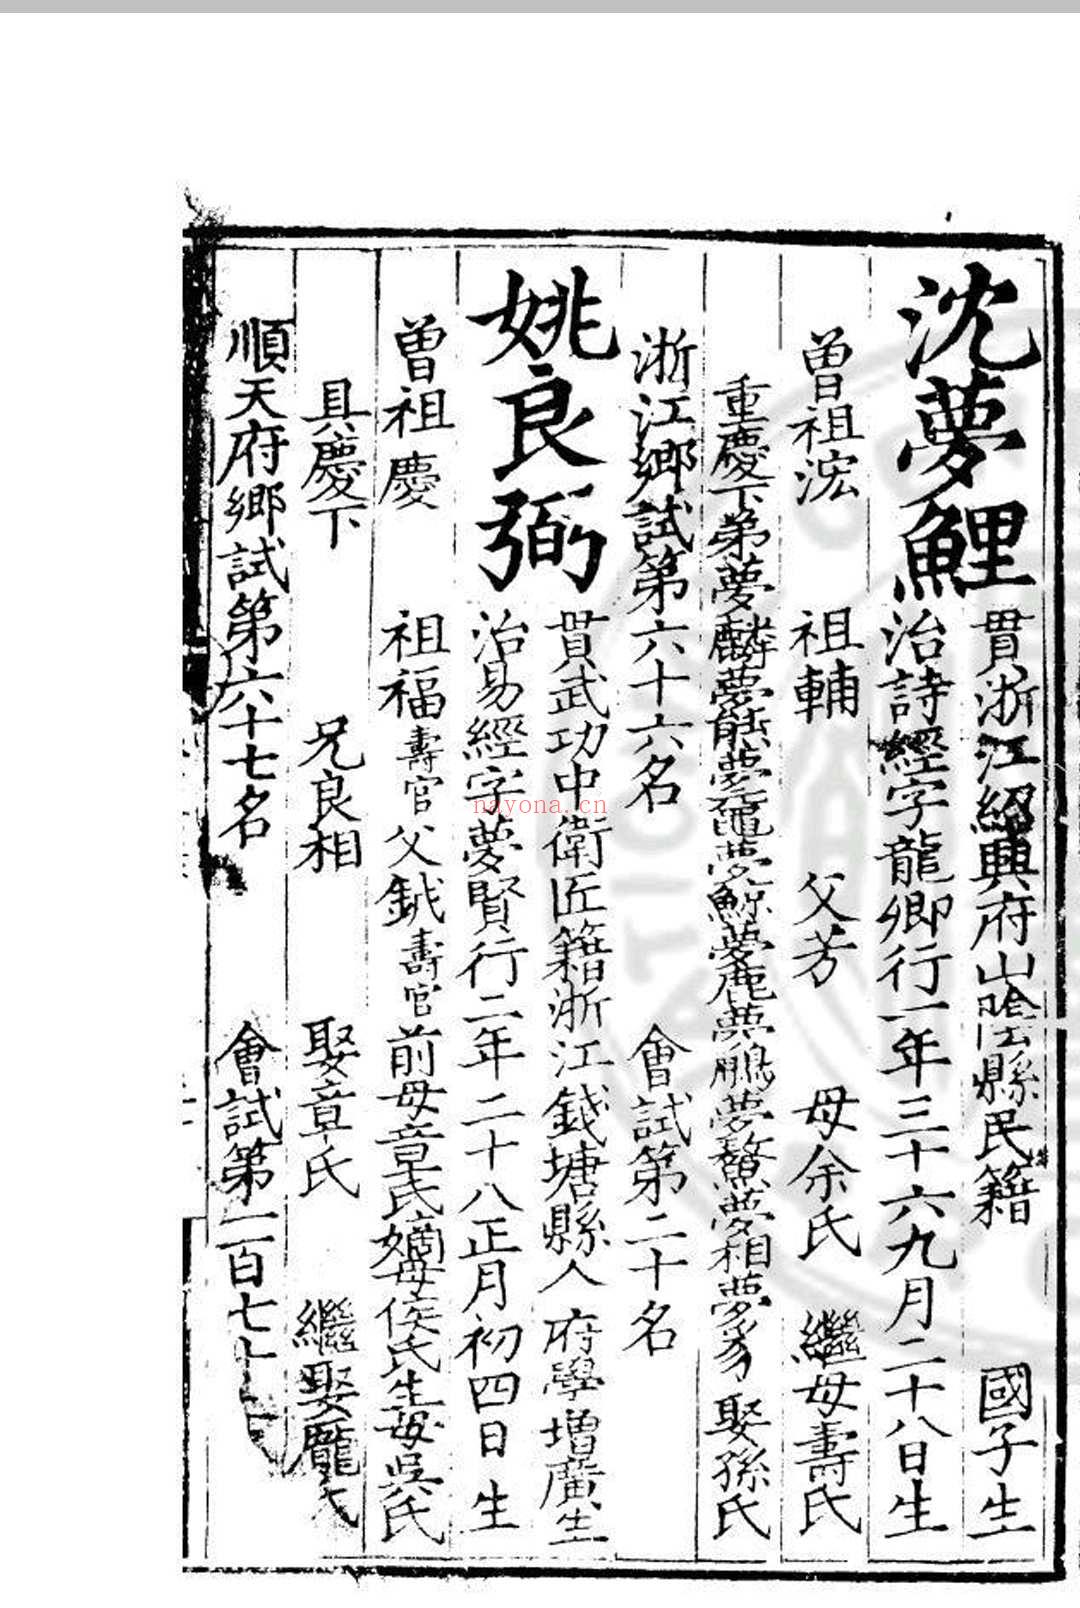 嘉靖十四年进士登科录 (明)夏言编 明嘉靖间(1522-1566)刊本 (嘉靖四十一年进士)